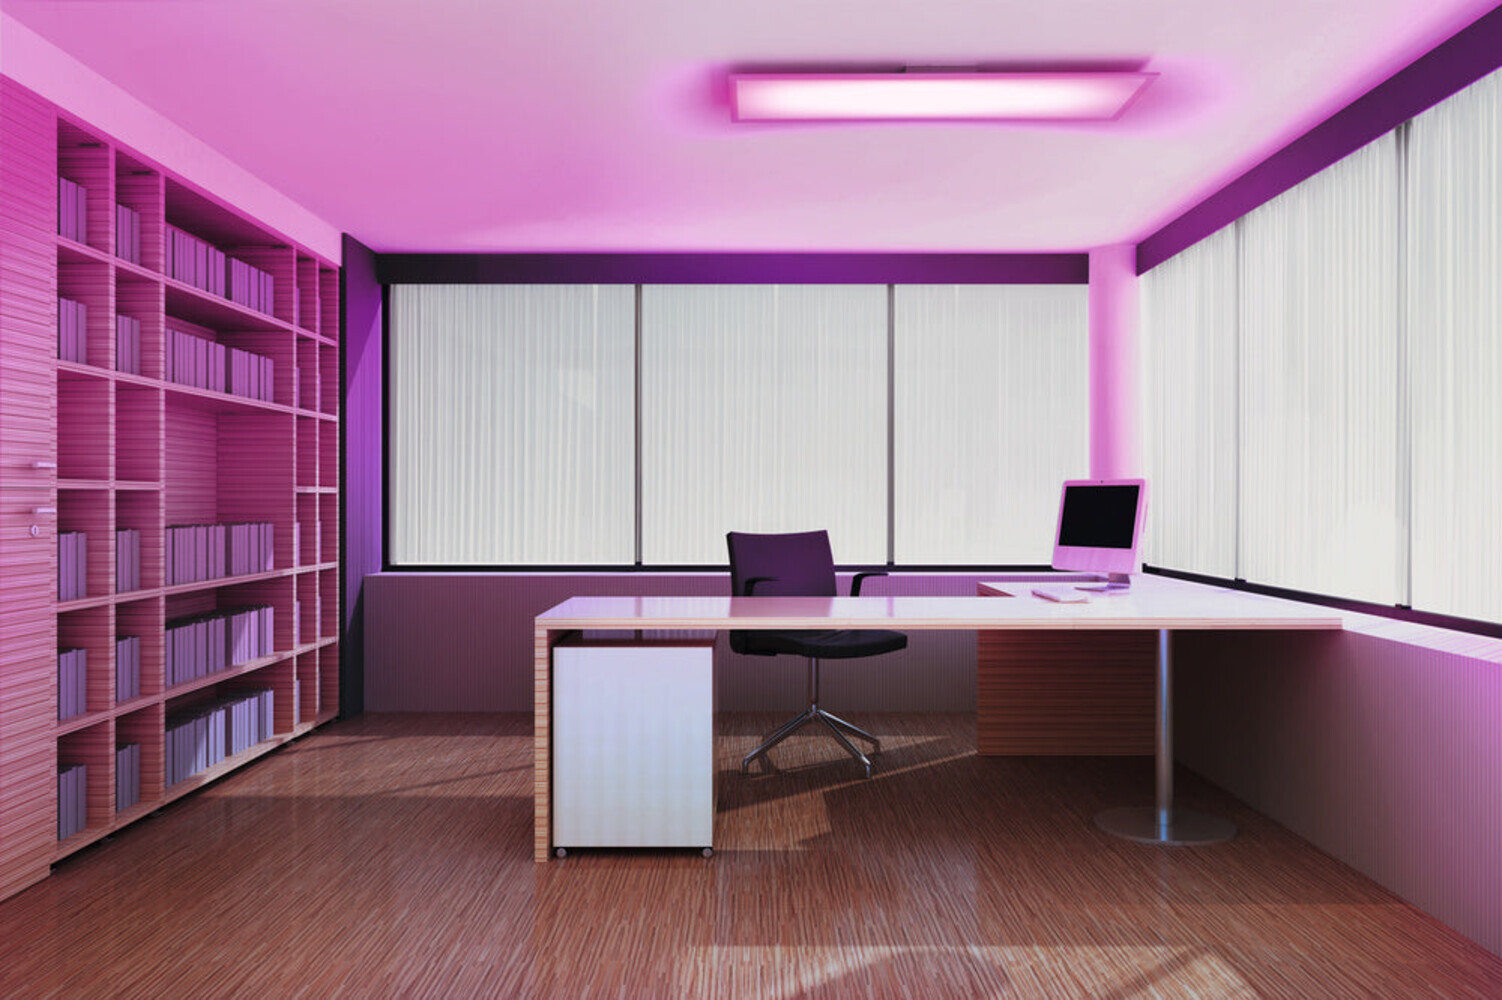 Leuchtendes LED Panel der Marke LEDVANCE in außergewöhnlicher RGBW Farbgebung